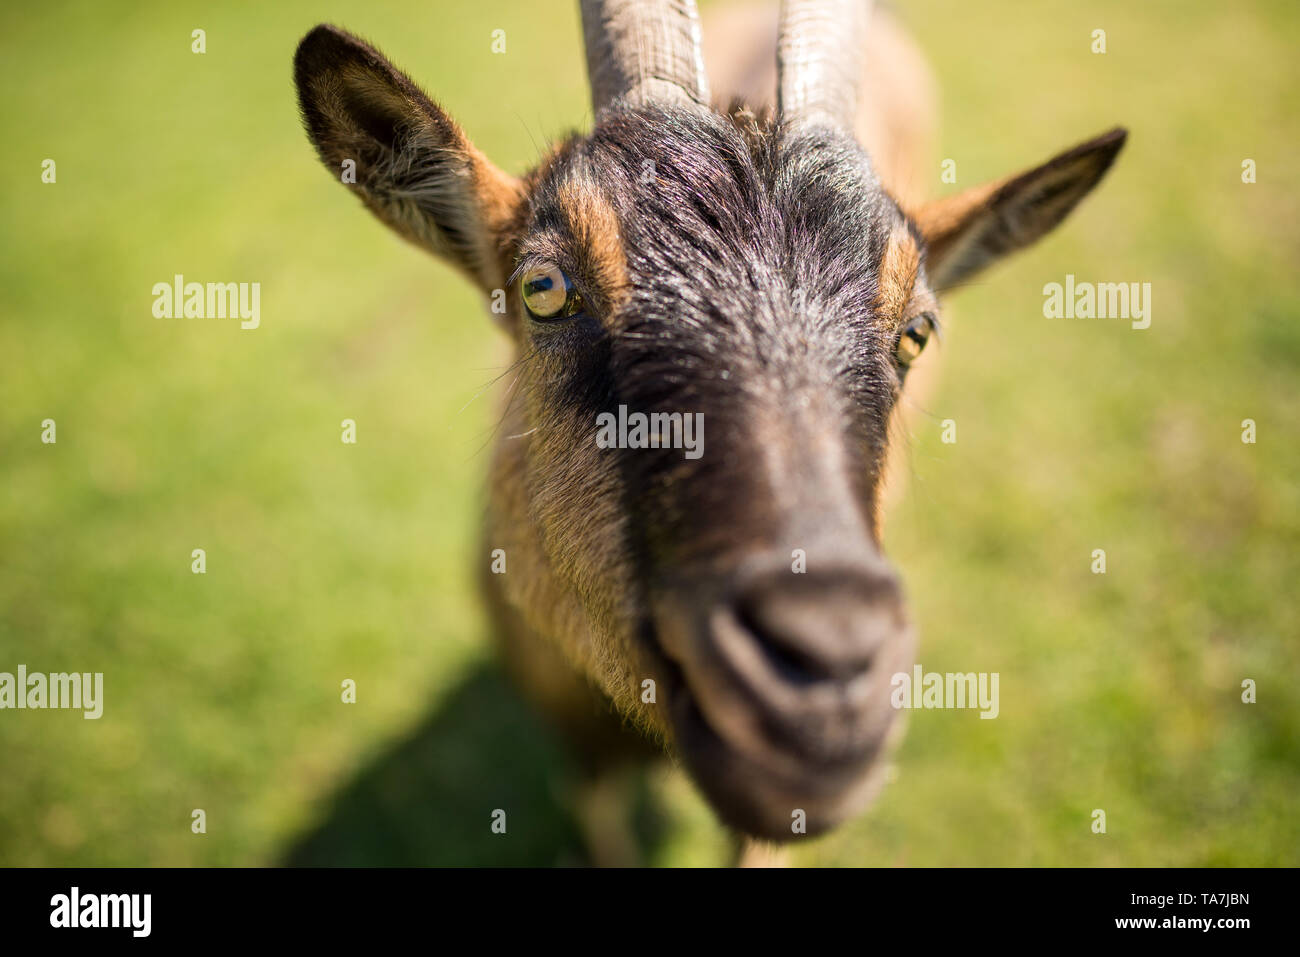 Retrato de cabra, centrarse en los ojos Foto de stock